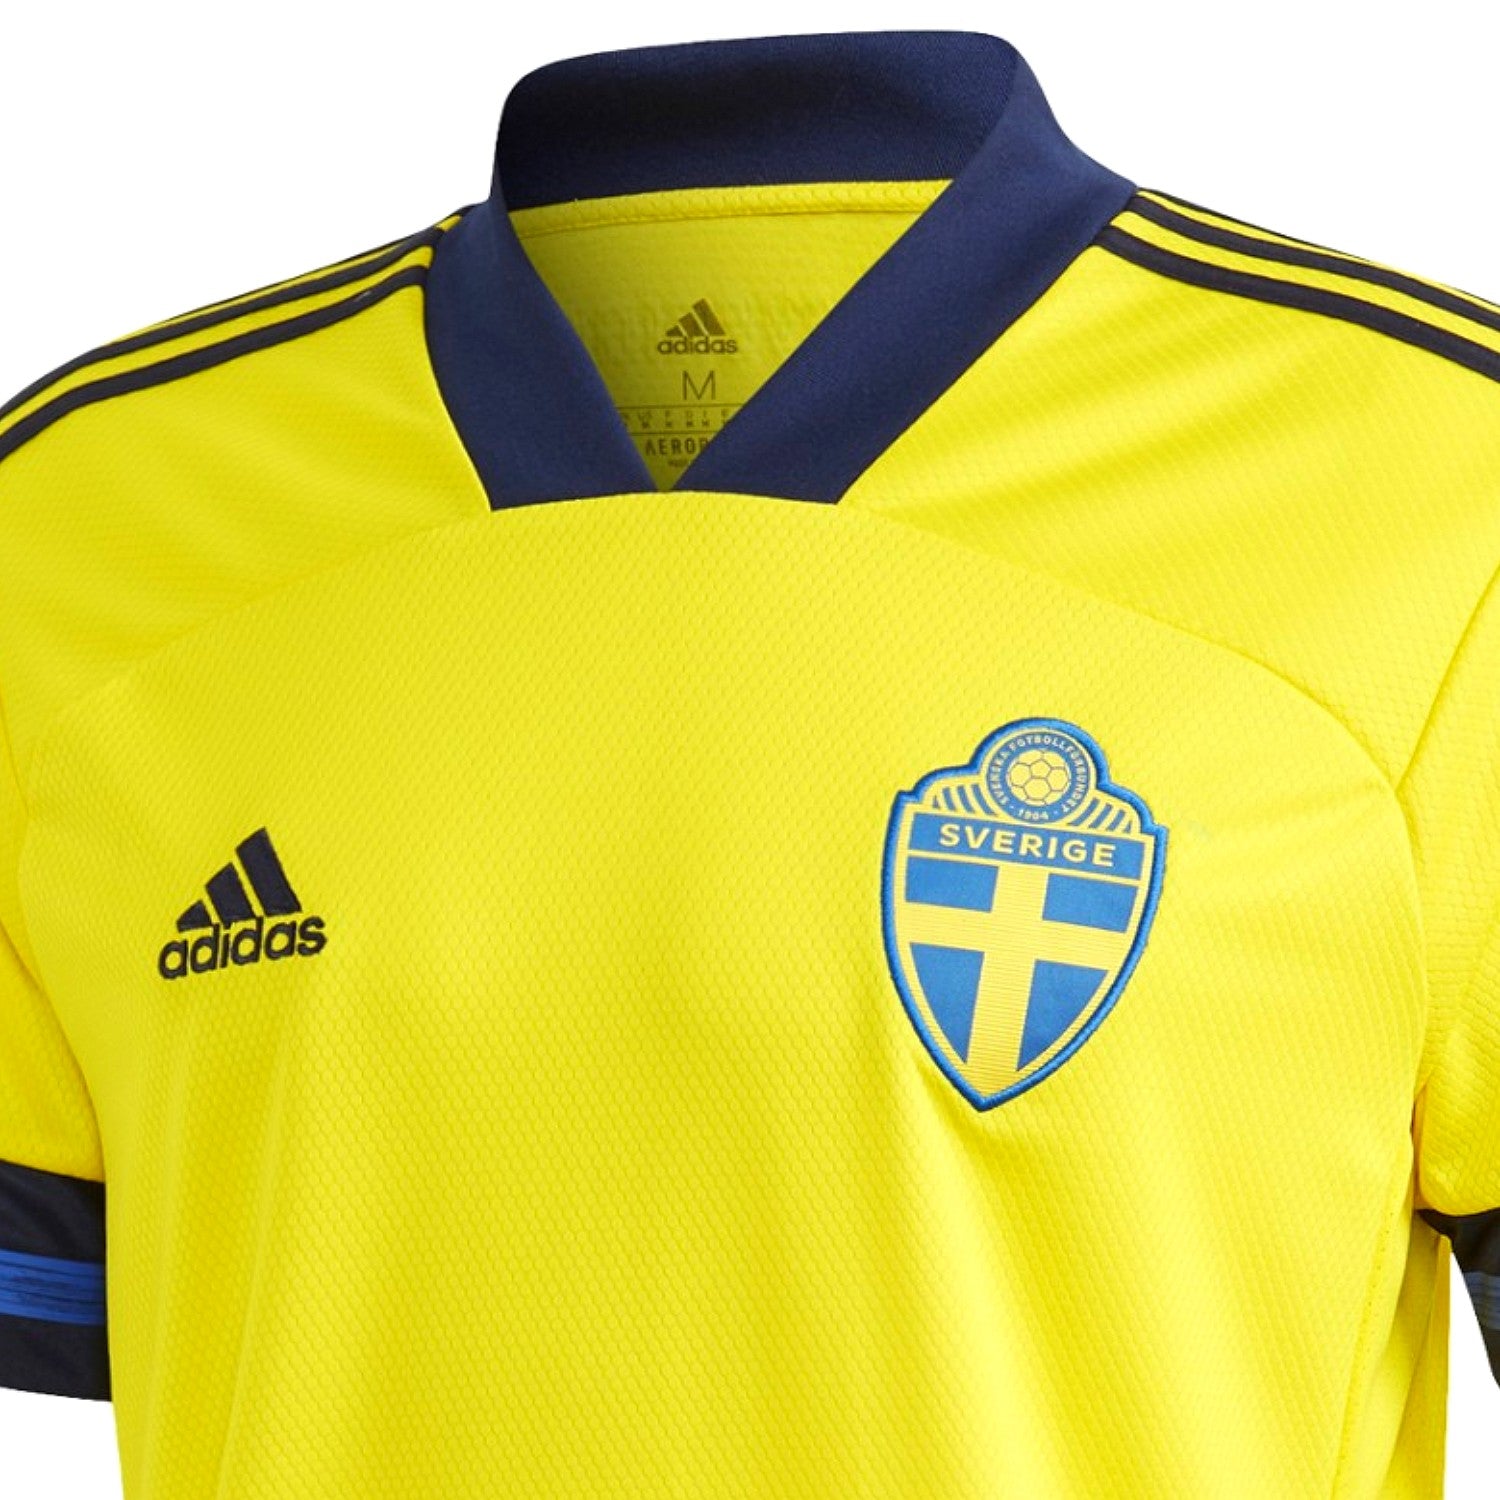 Official adidas Sweden Soccer Jerseys & Fan Gear